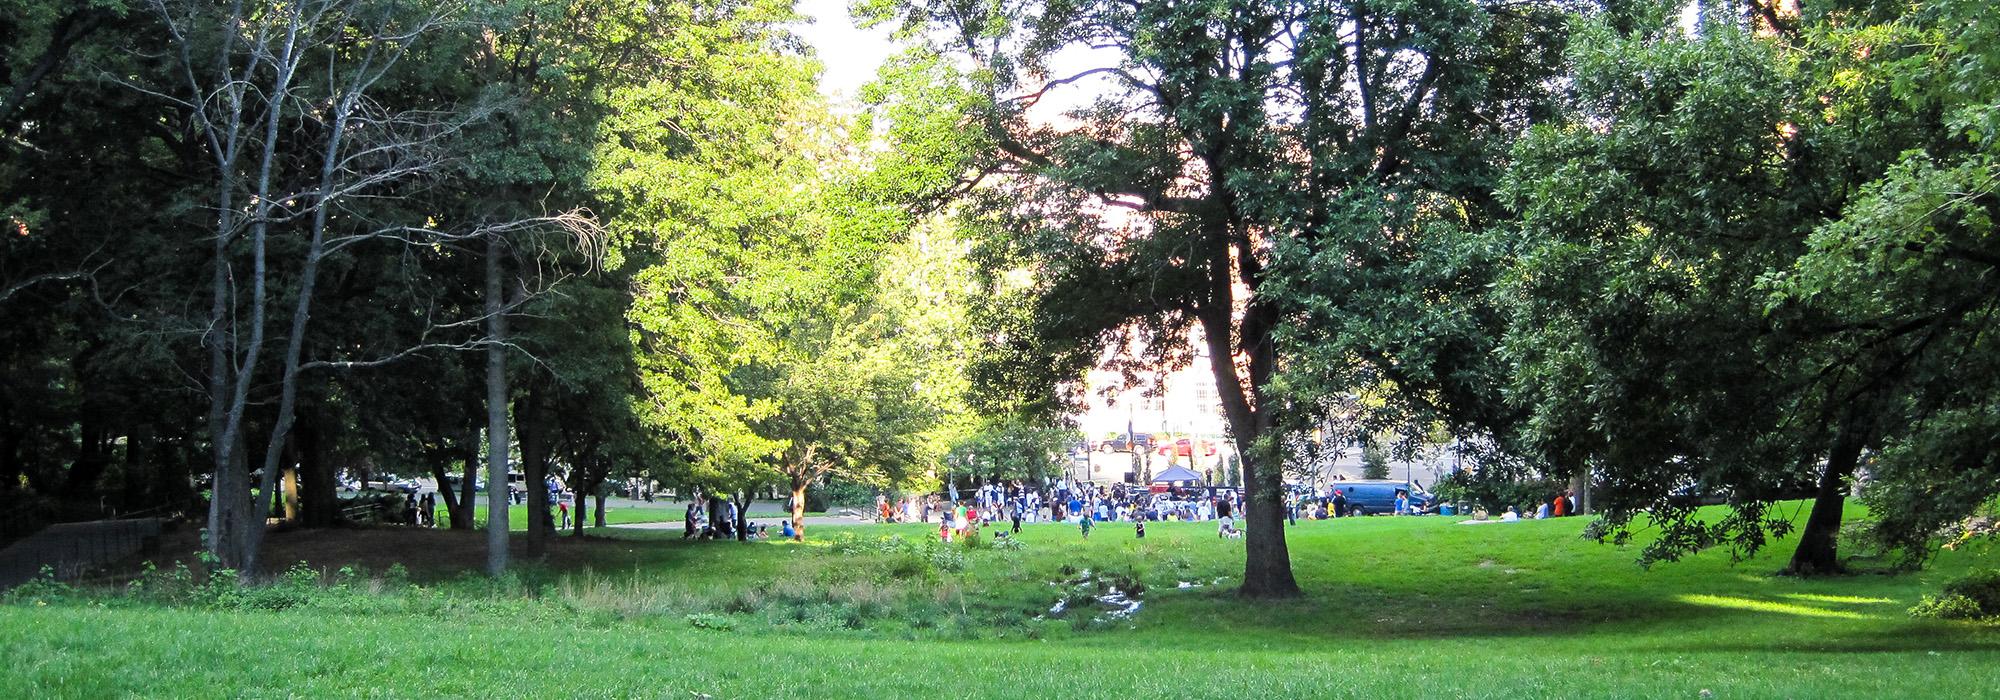 St. Nicholas Park, New York, NY